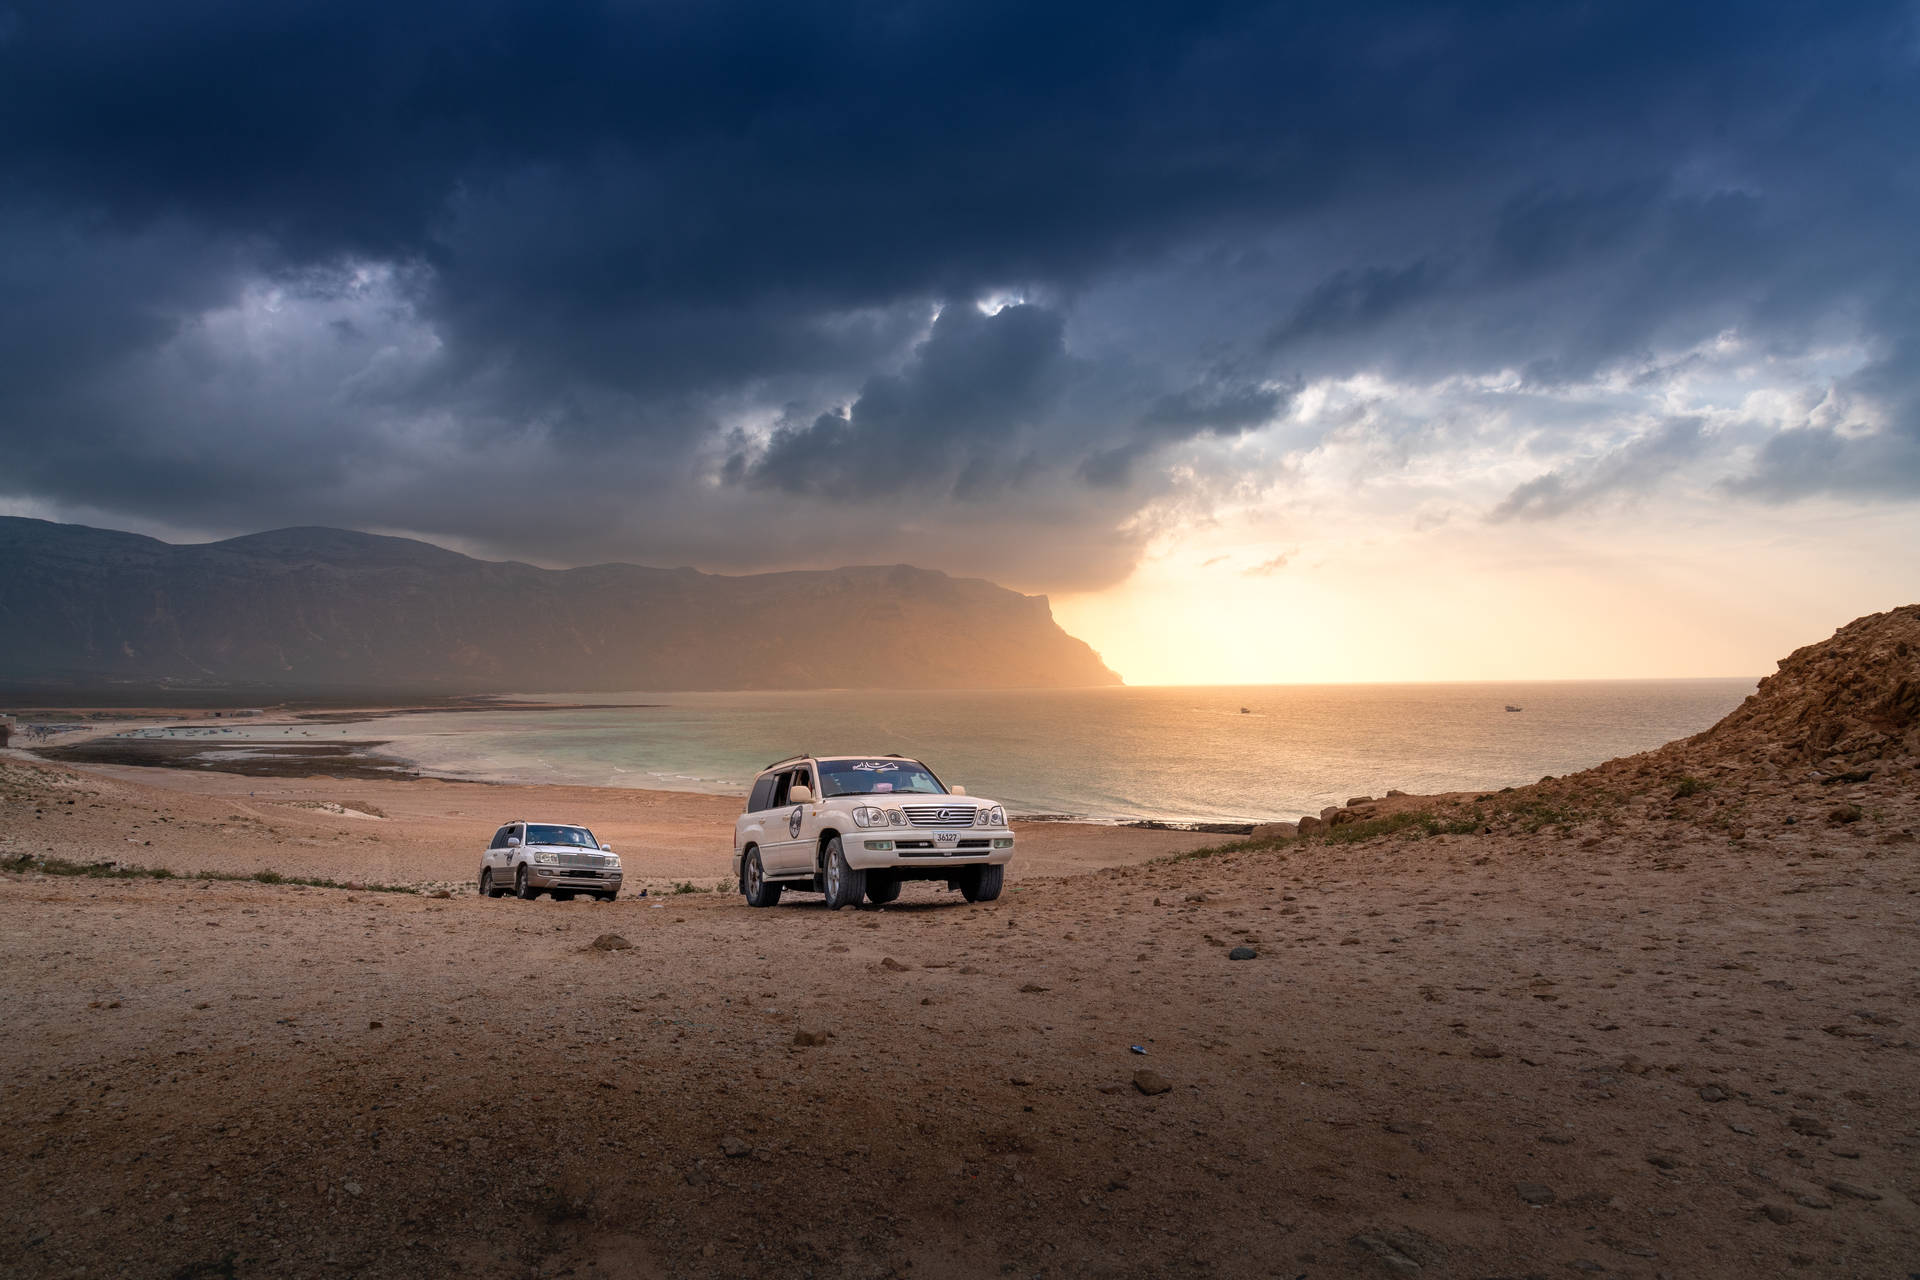 Yemen Landscape Drive